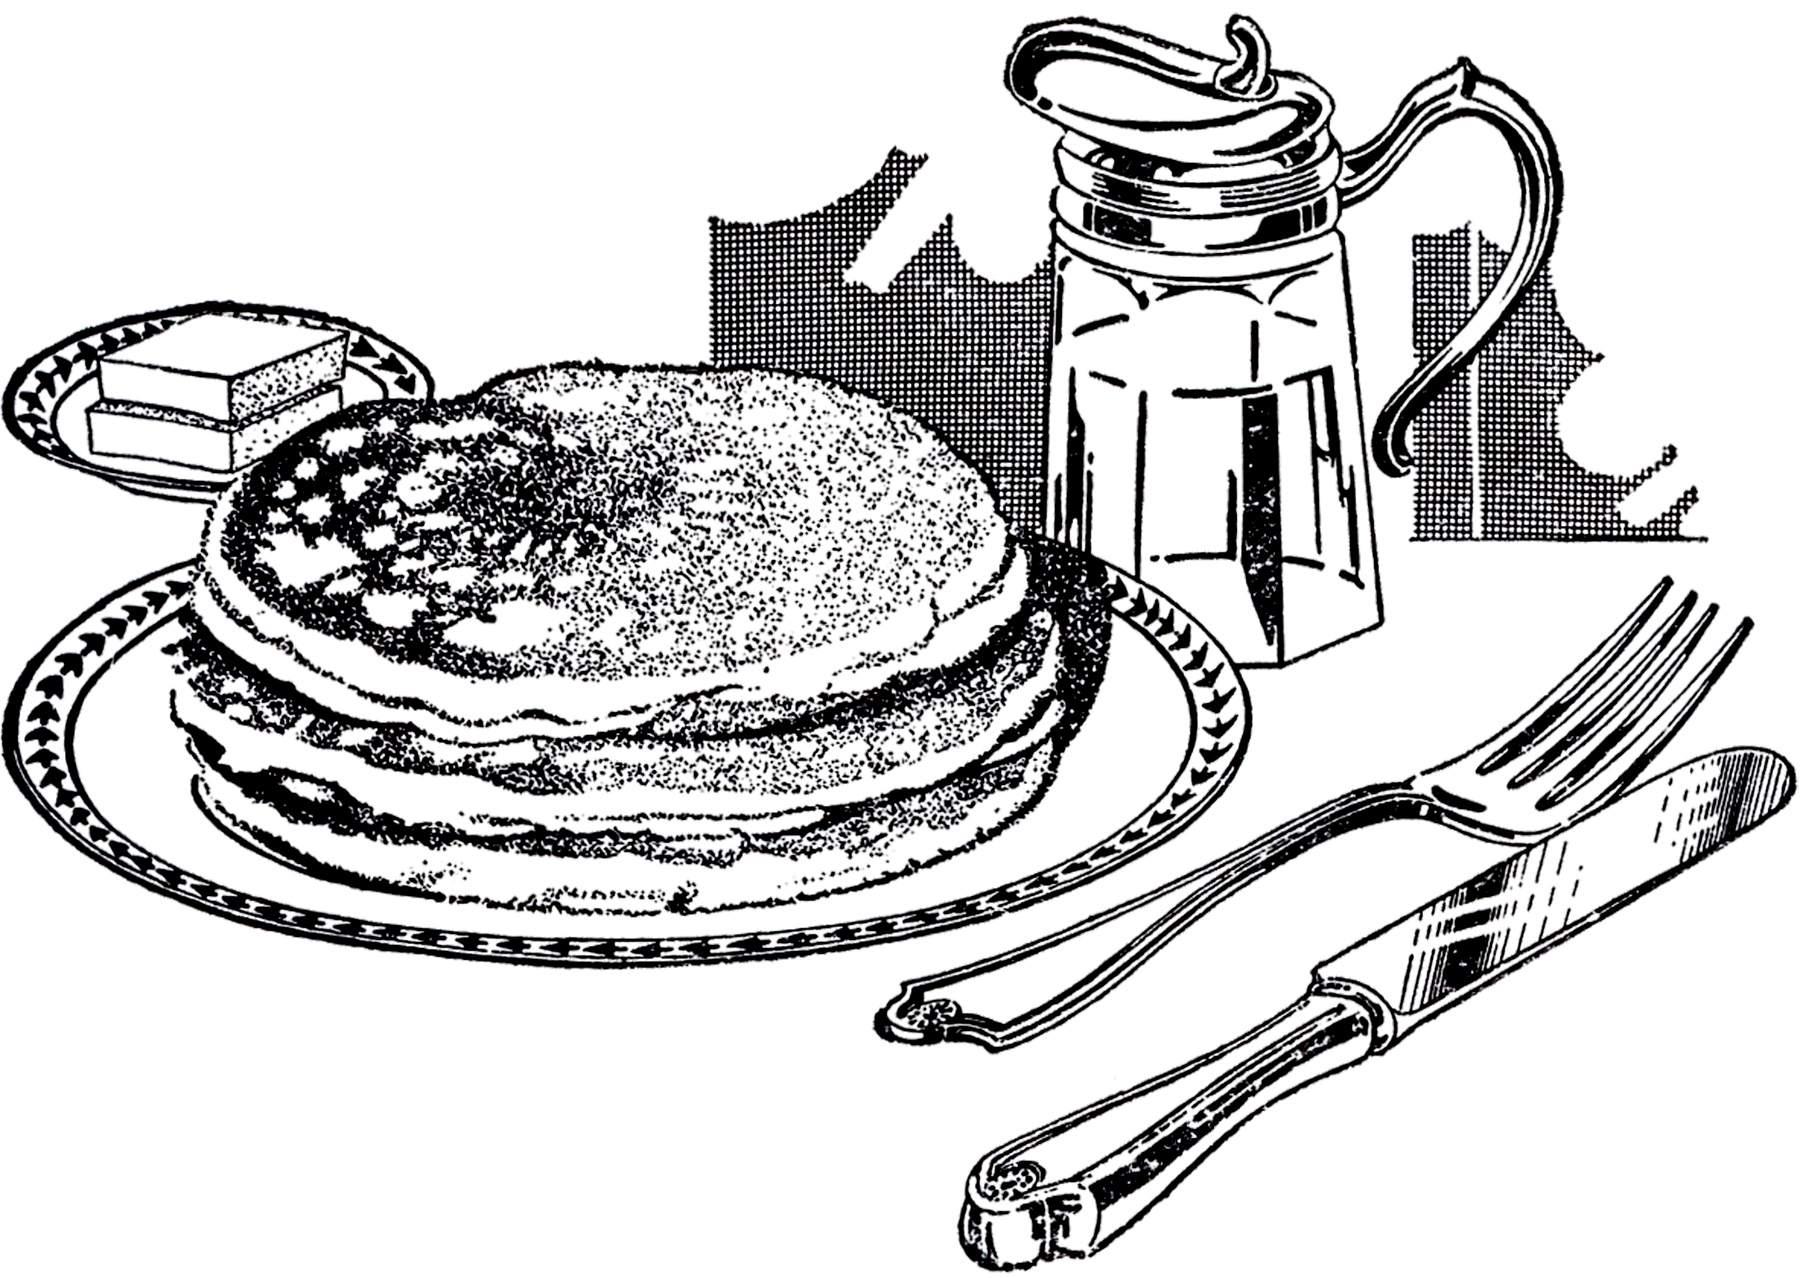 Pancake download breakfast clip art free clipart of breakfast food 3 2